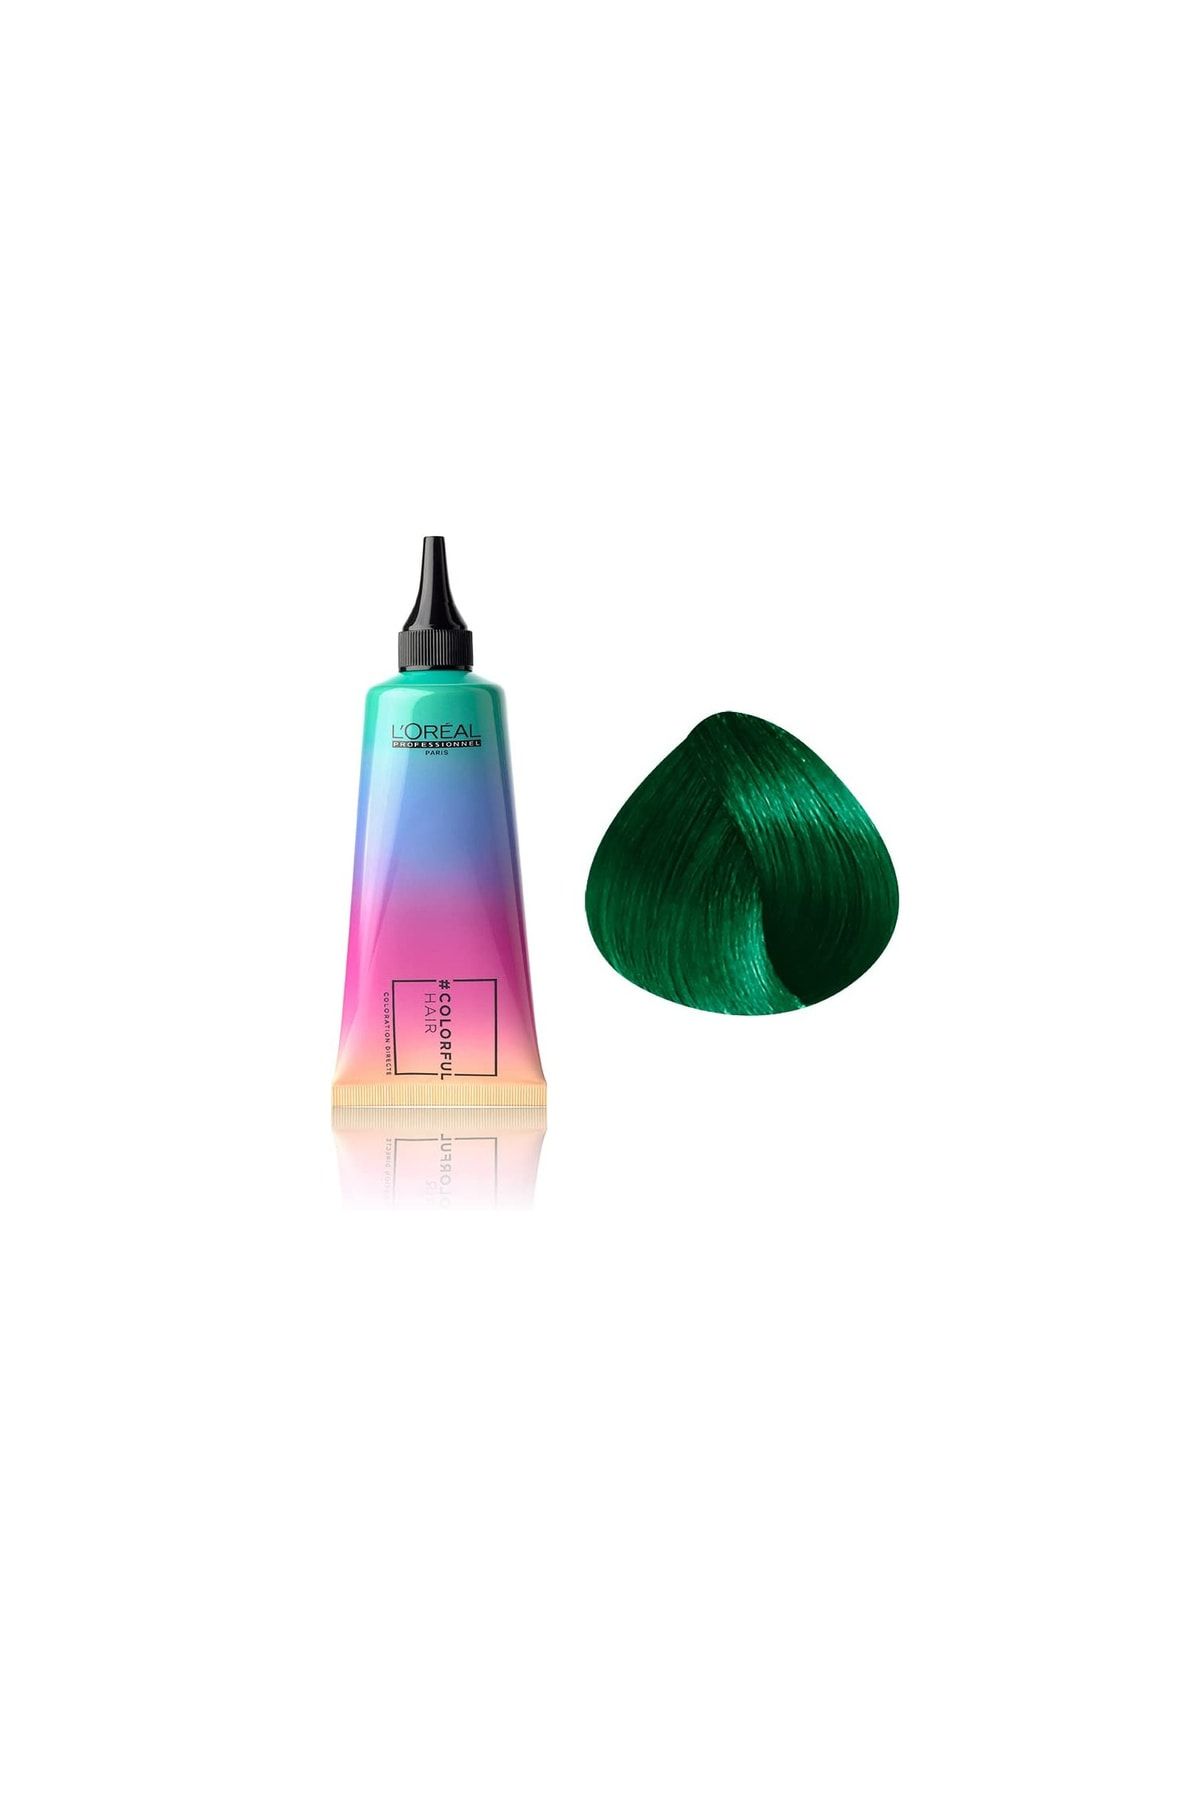 L'oreal Professionnel Colorful Hair Iced Mint Yeşil Canlı Göz Alıcı Yarı Kalıcı Saç Boyası 90ml